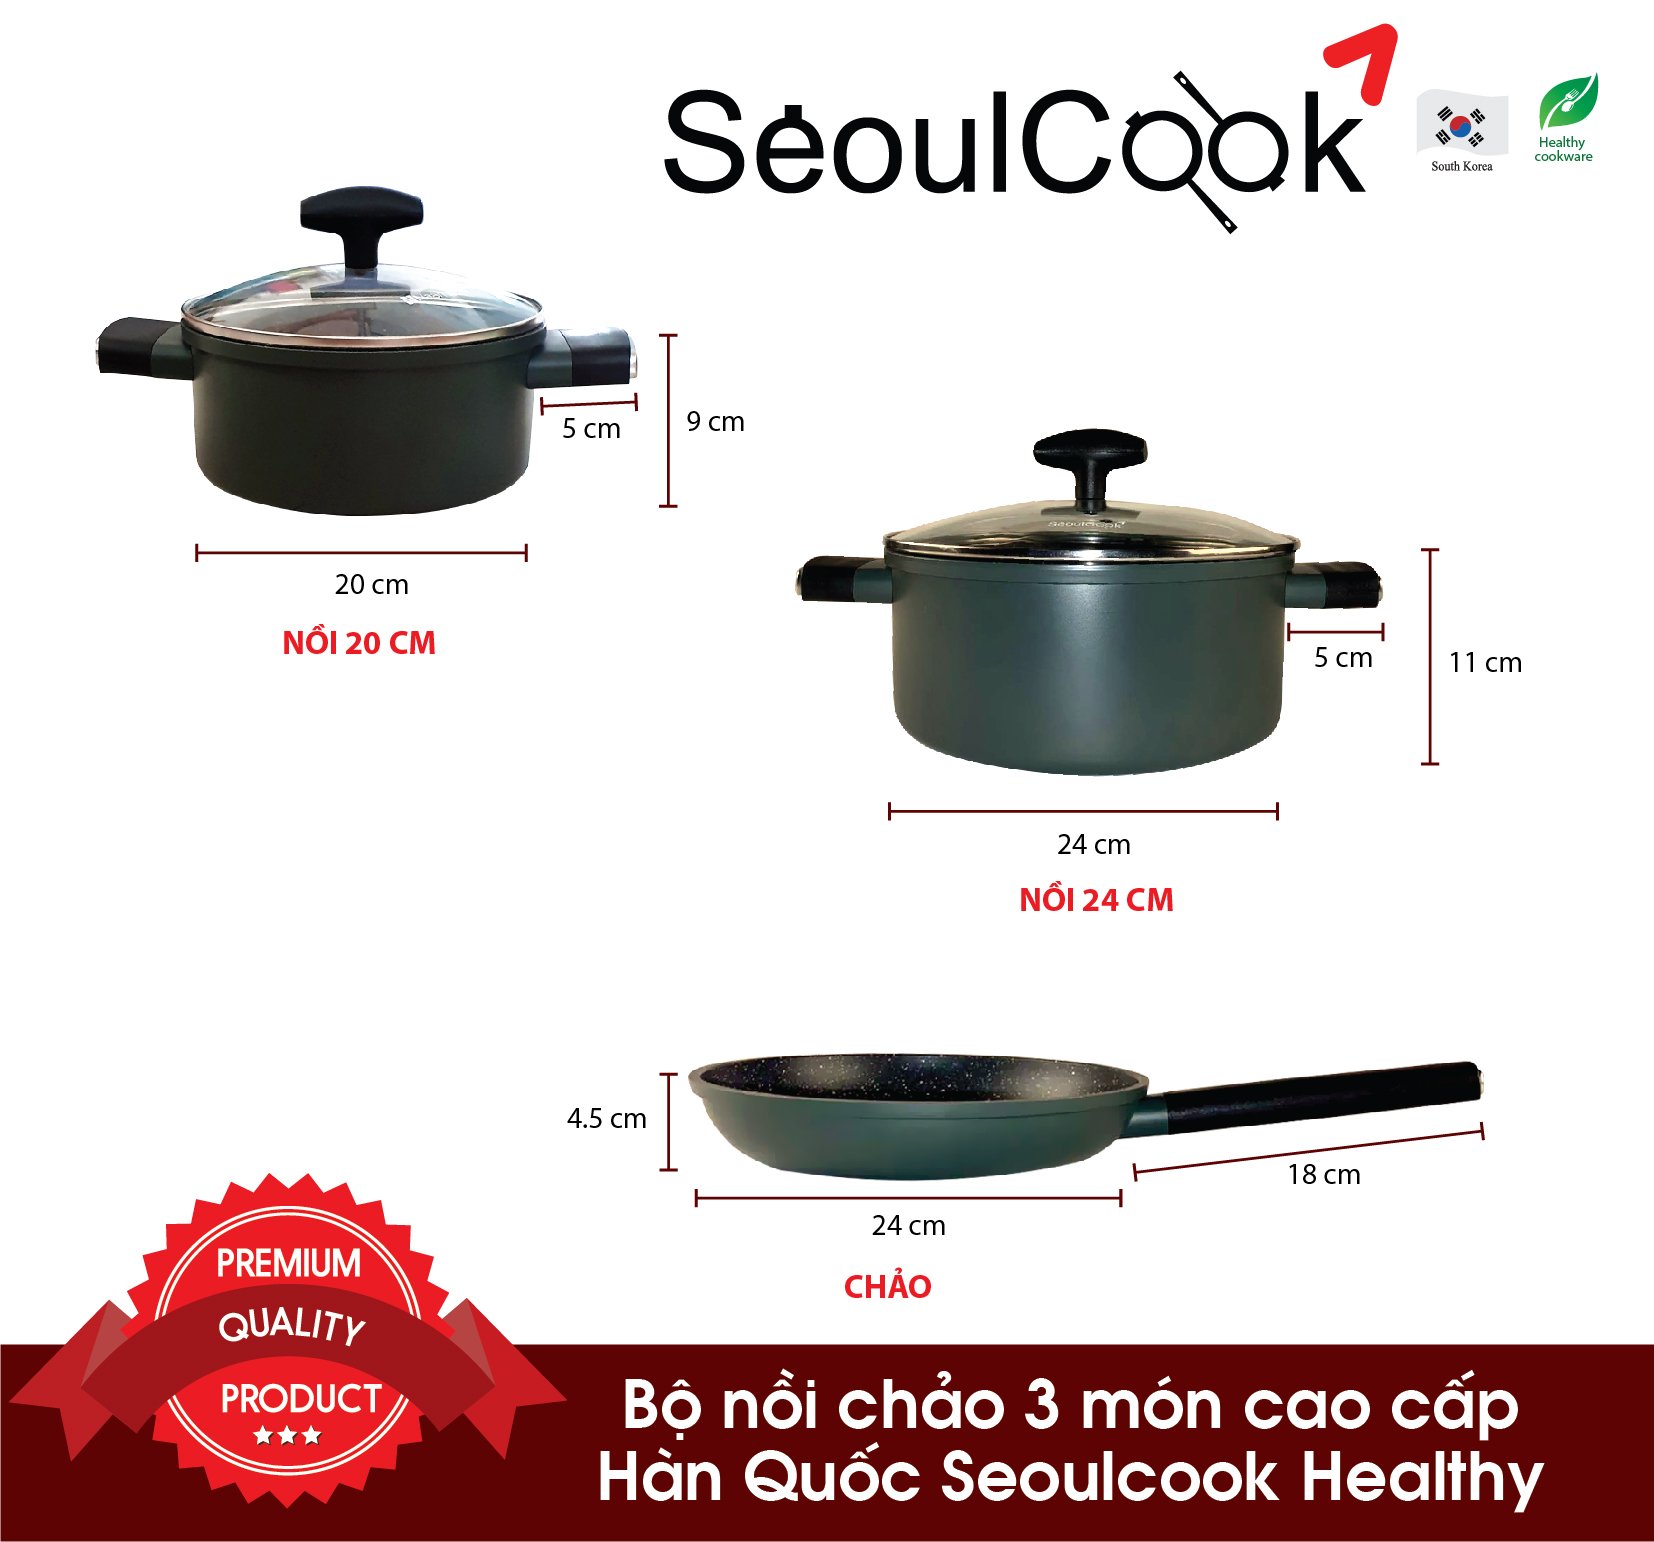 Bộ nồi chảo SH1 4 món, nồi 20cm + nồi 24cm + chảo 24cm + chảo vuông 15x20cm đáy từ/ Induction Seoulcook Hàn Quốc, dùng được tất cả các loại bếp – Hàng chính hãng